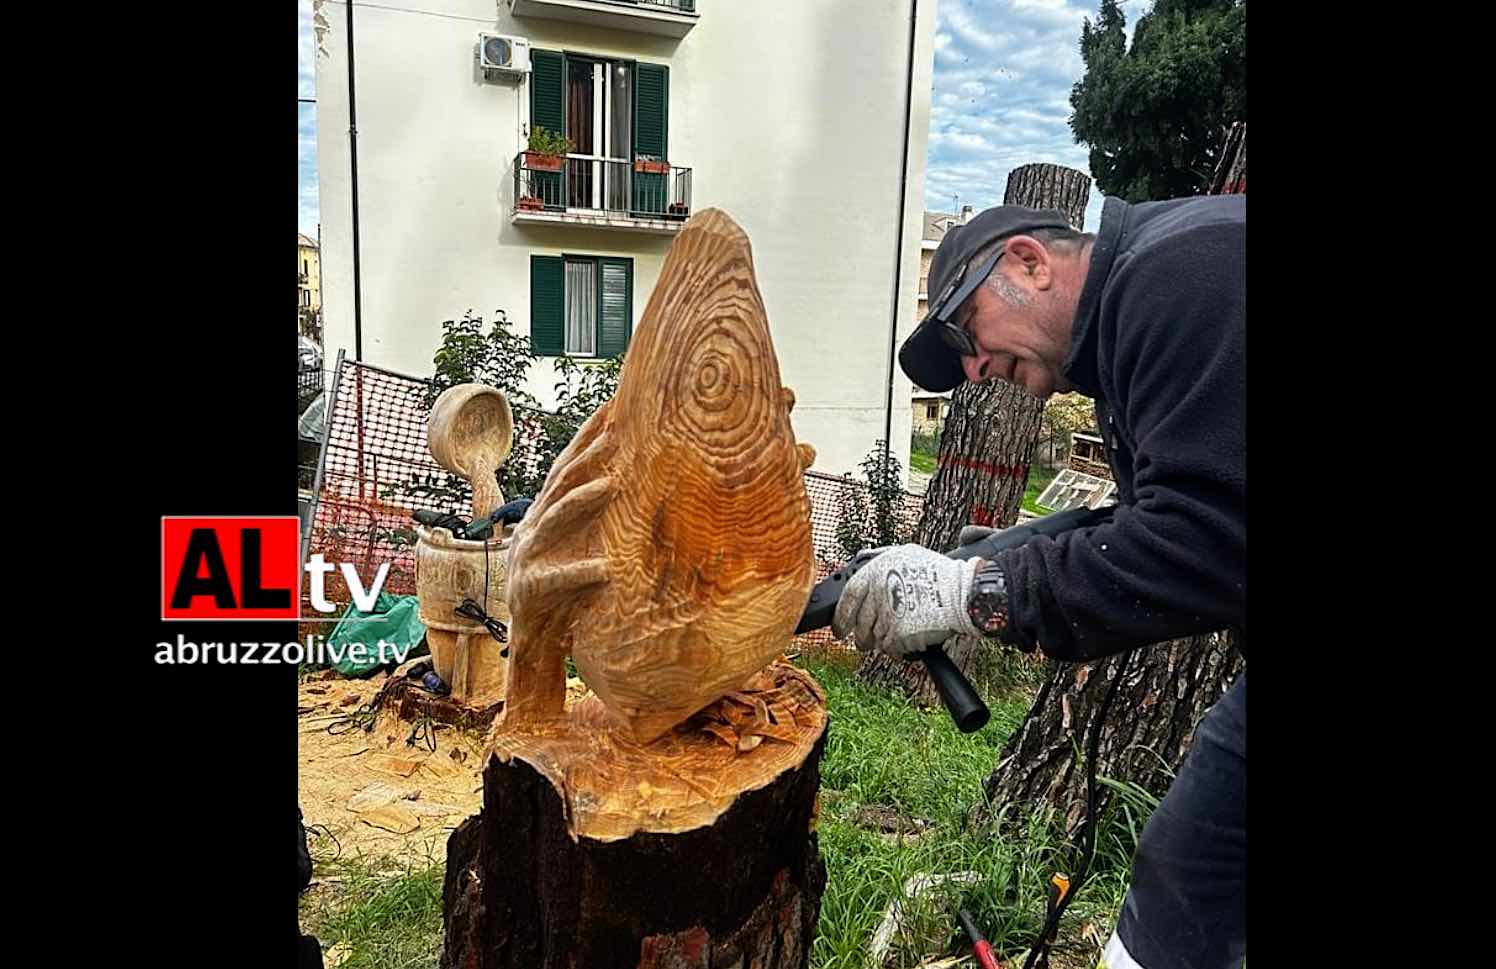 Alberi abbattuti riprendono vita e diventano sculture nella villa comunale di Casoli